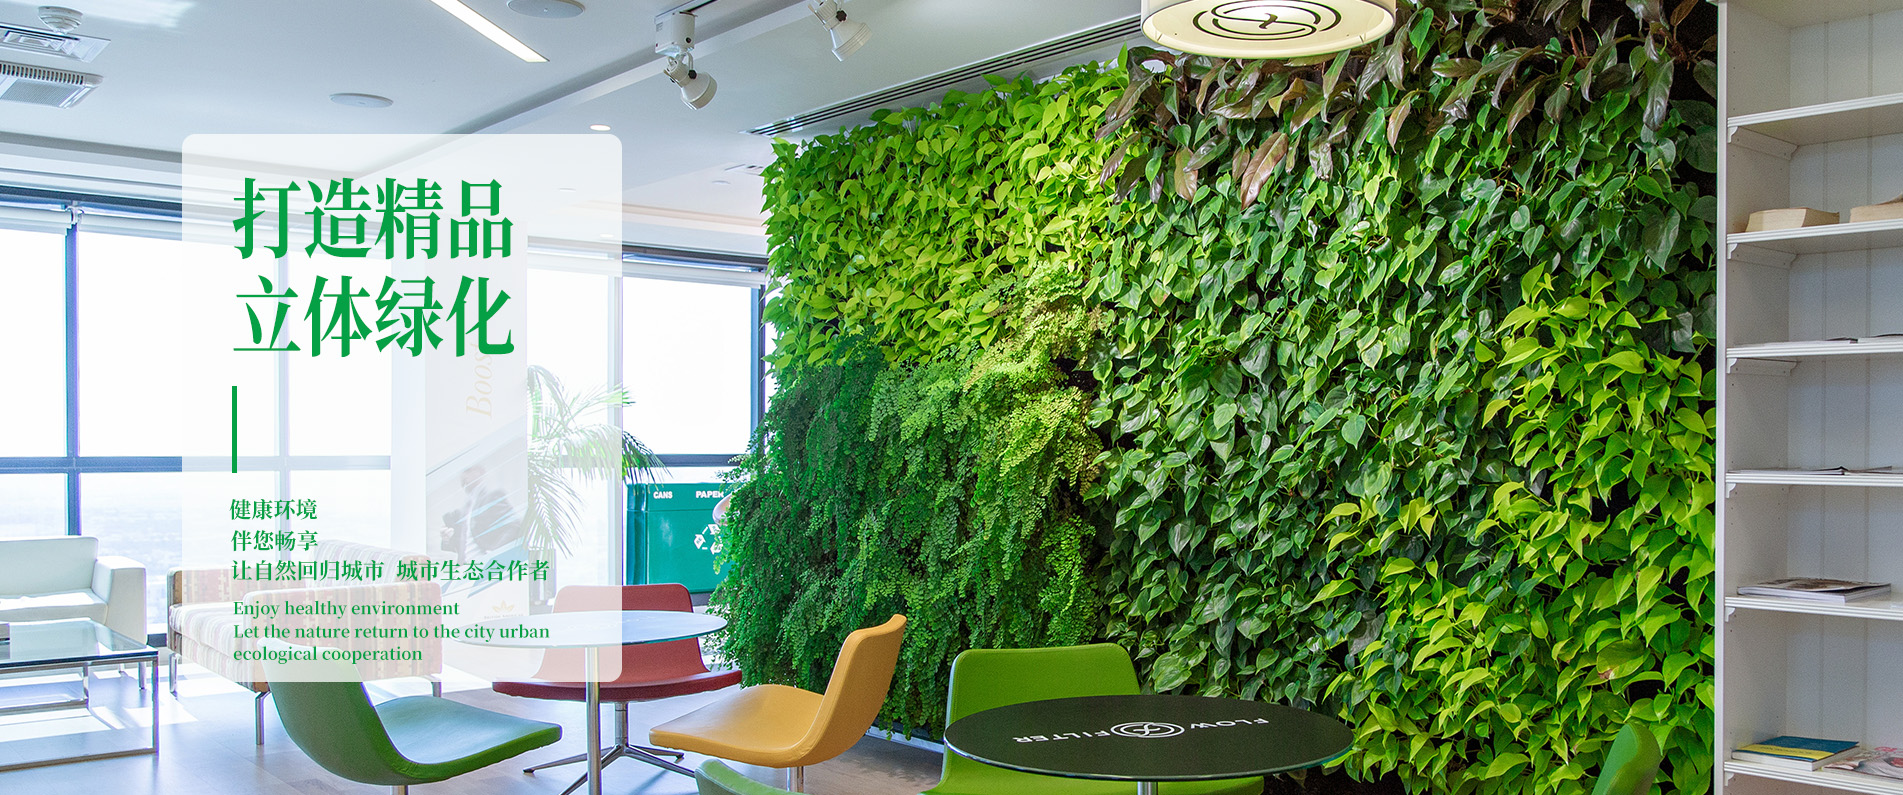 植物墙是并不占用人居环境空间的绿化方式